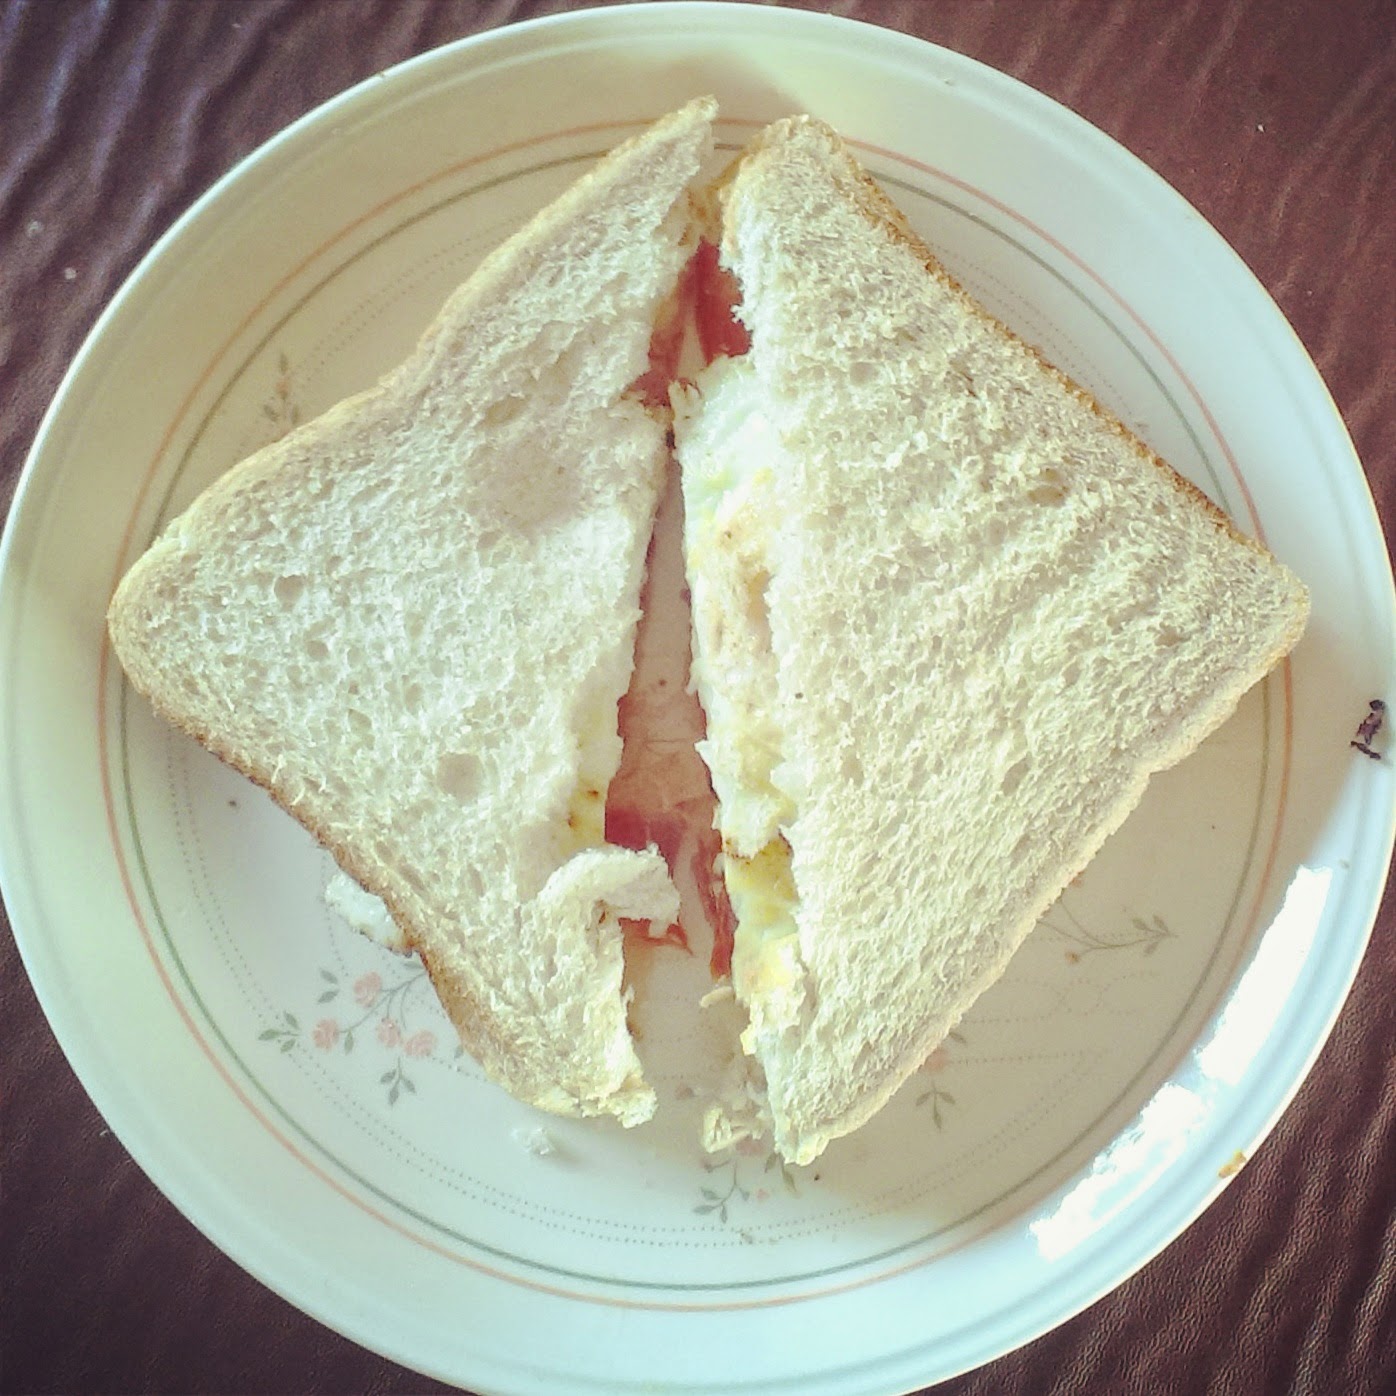 Breakfast sandwich